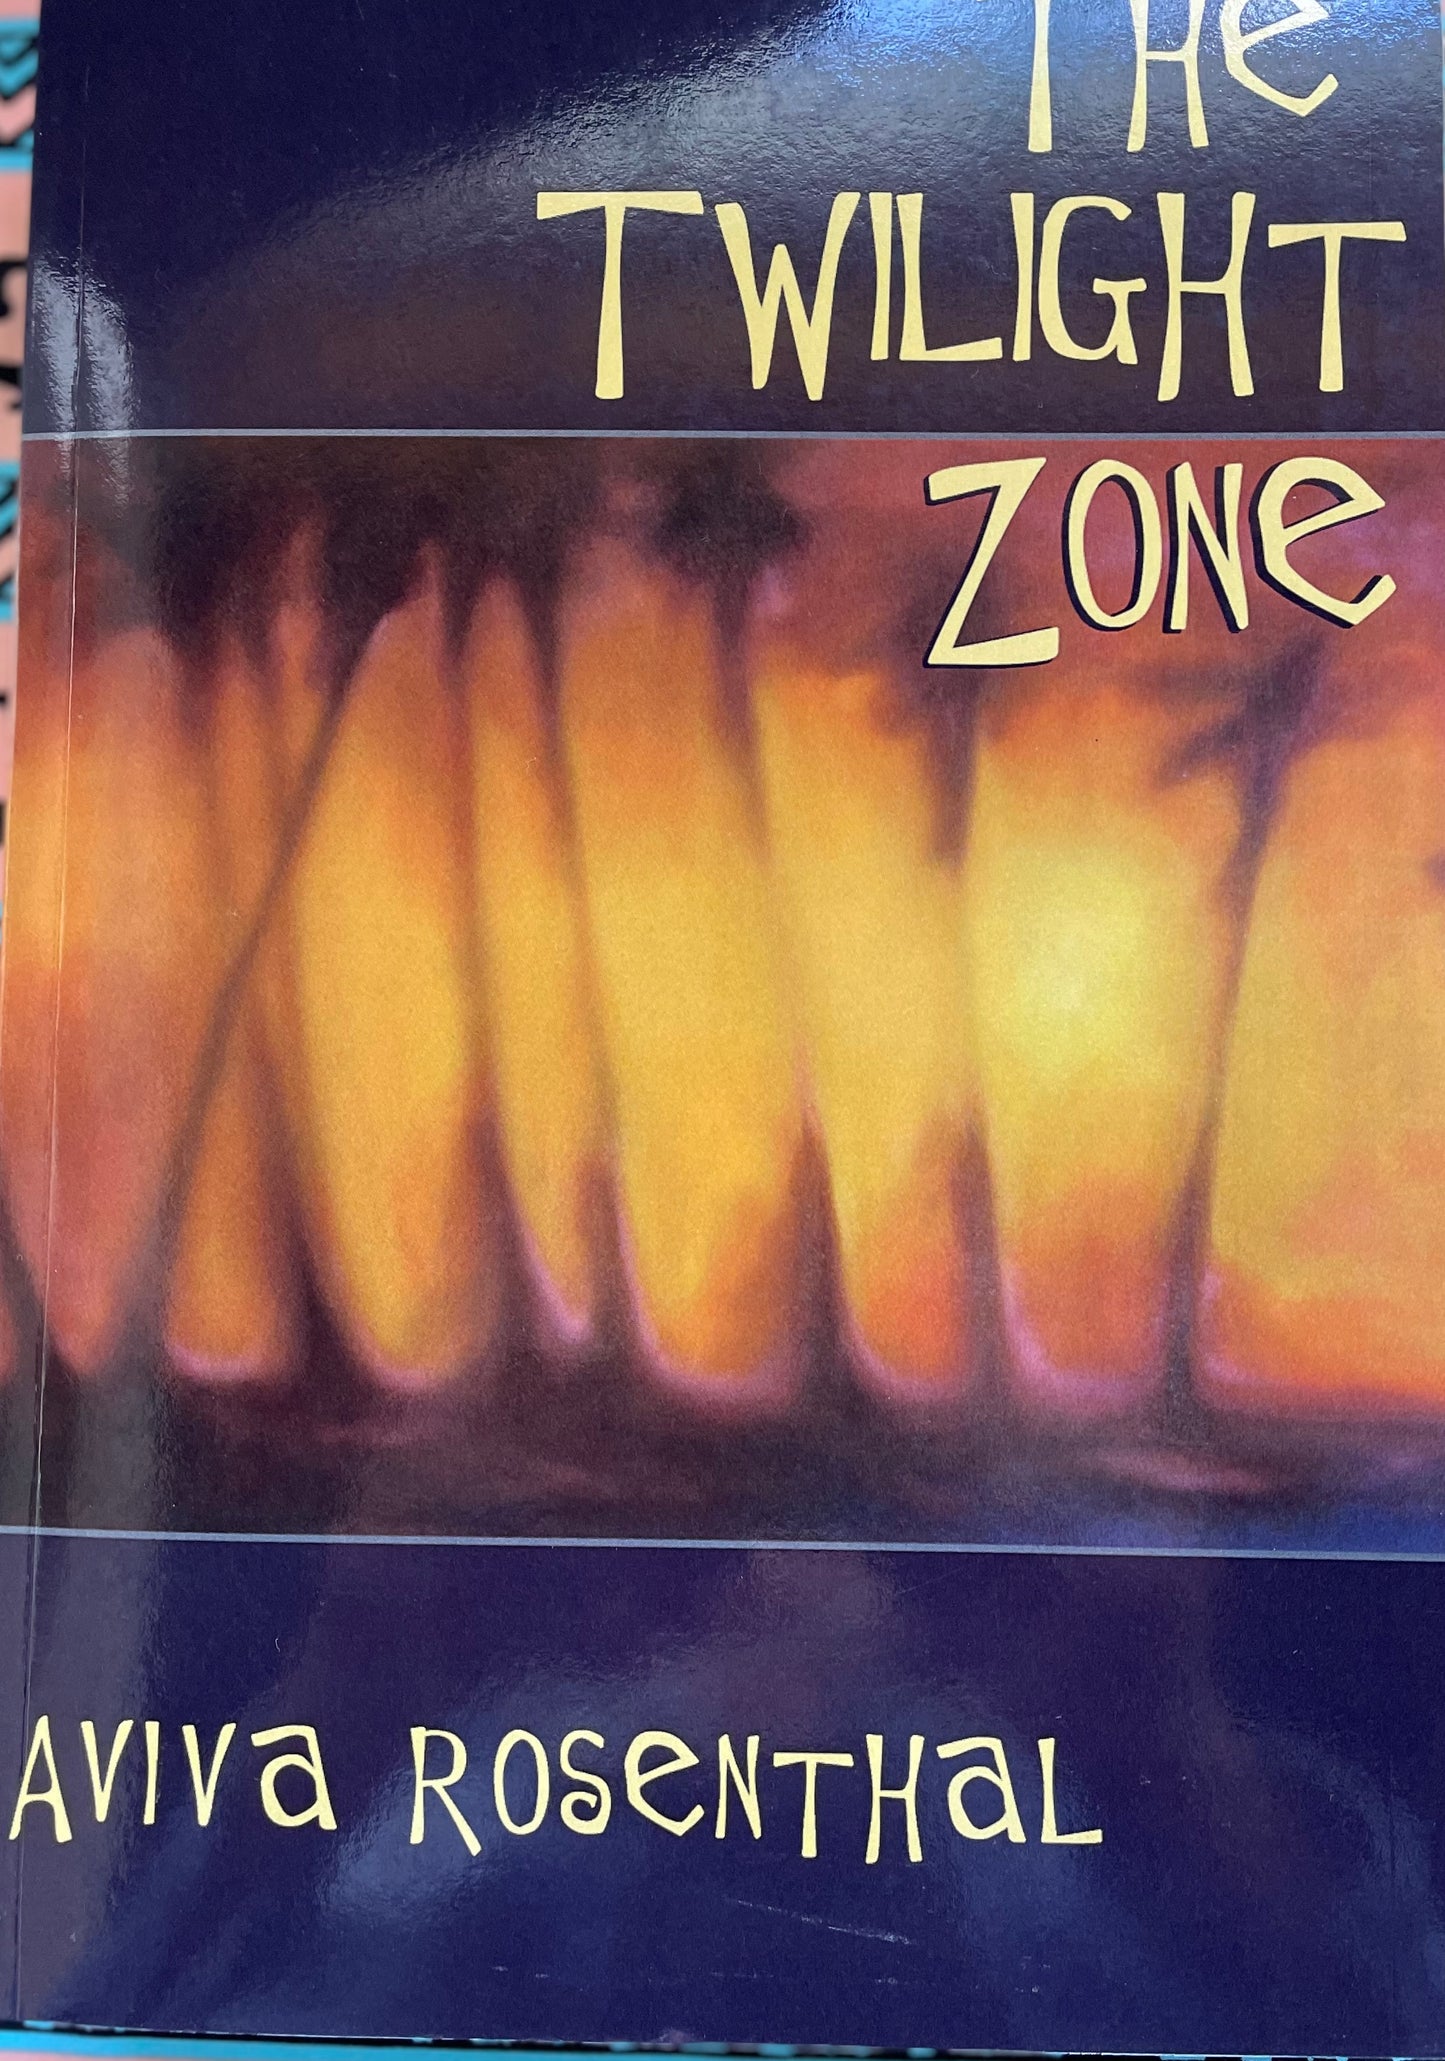 The Twilight Zone by Aviva Rosenthal